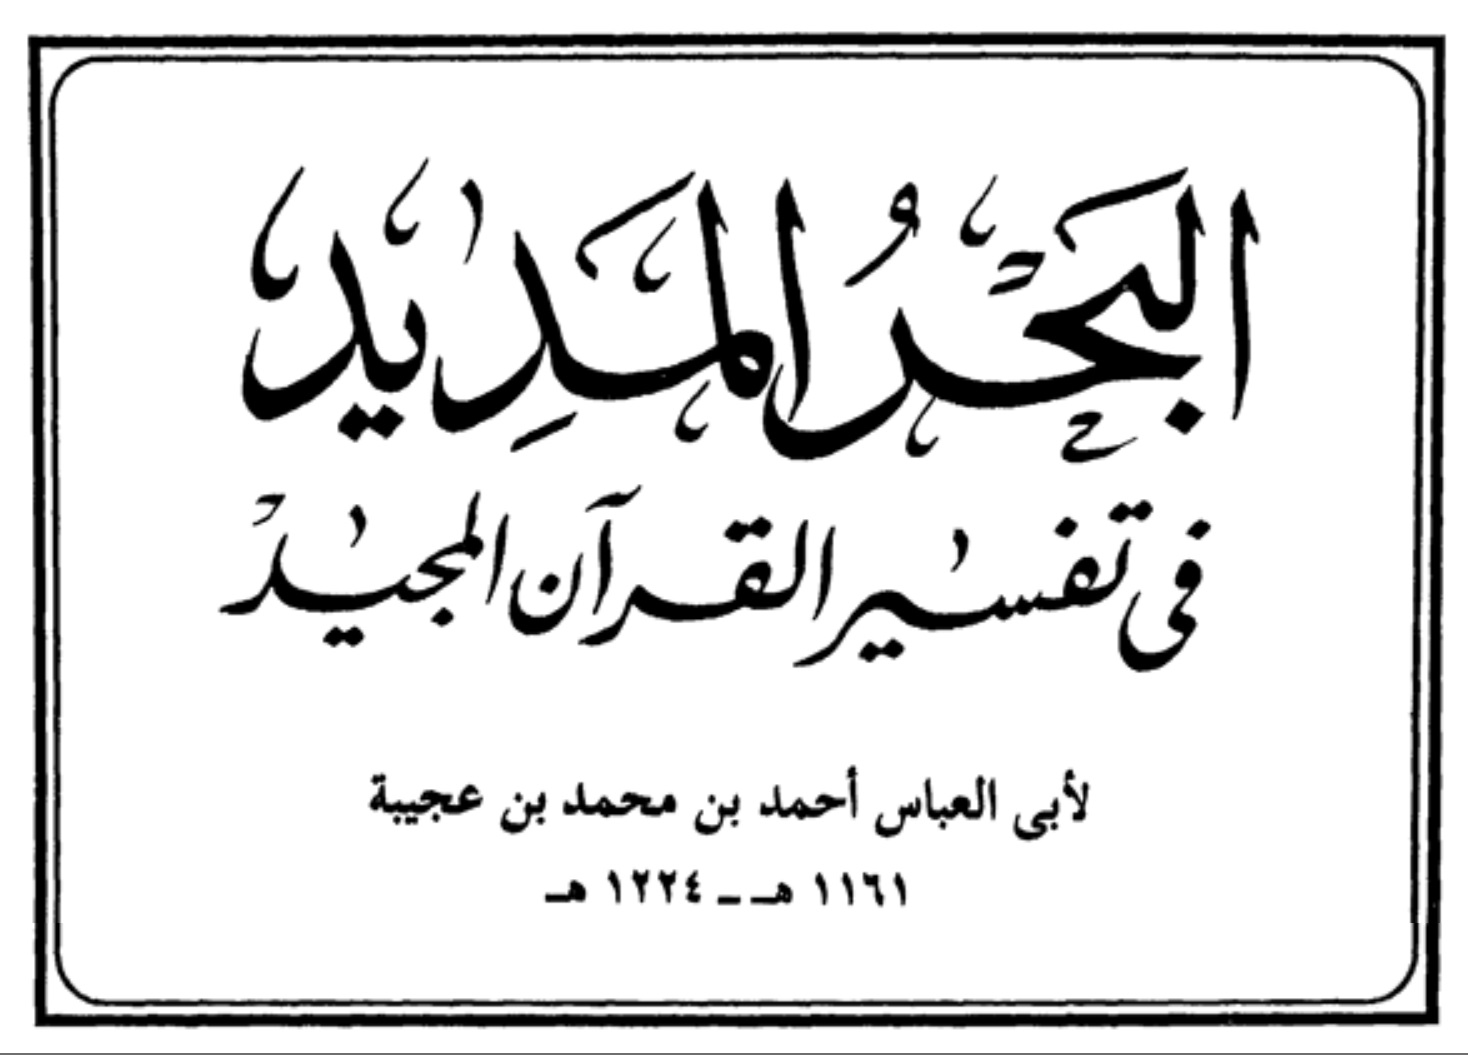 Book | Ibn 'Ajiba: Al-Bahr al-Madid